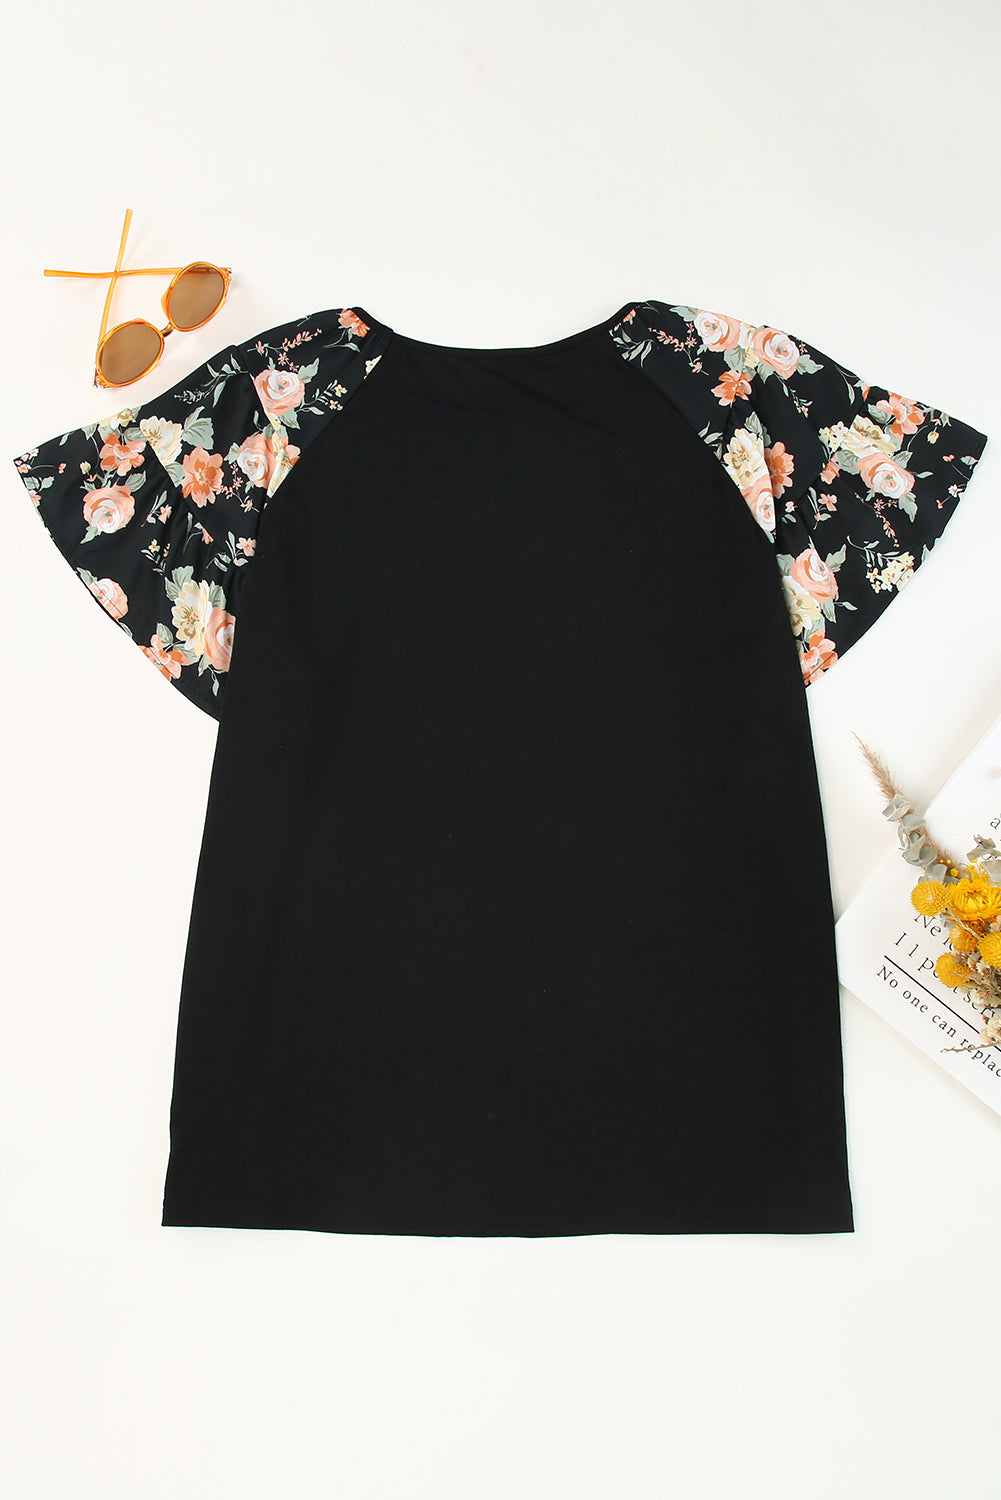 Črna majica velike velikosti s cvetličnimi rokavi in ​​naborki